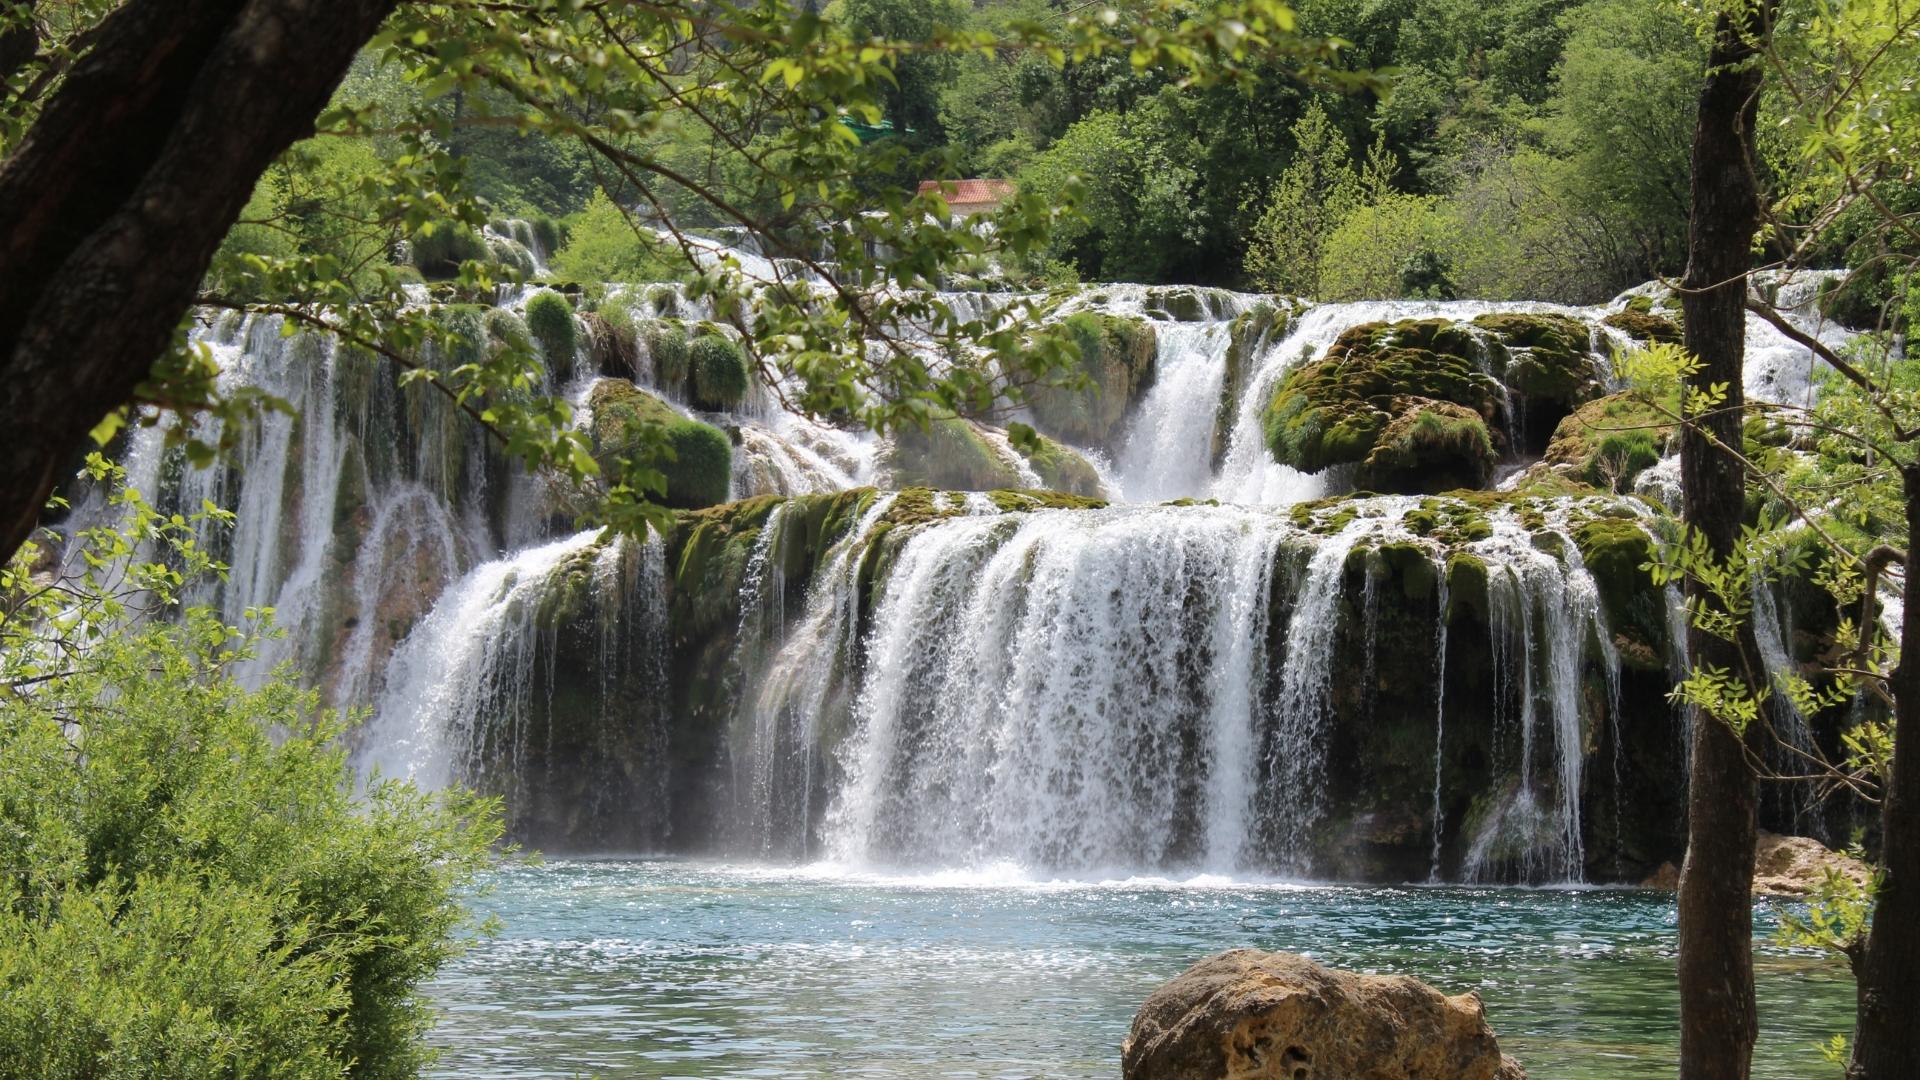 Visite três cachoeiras próximas a Curitiba